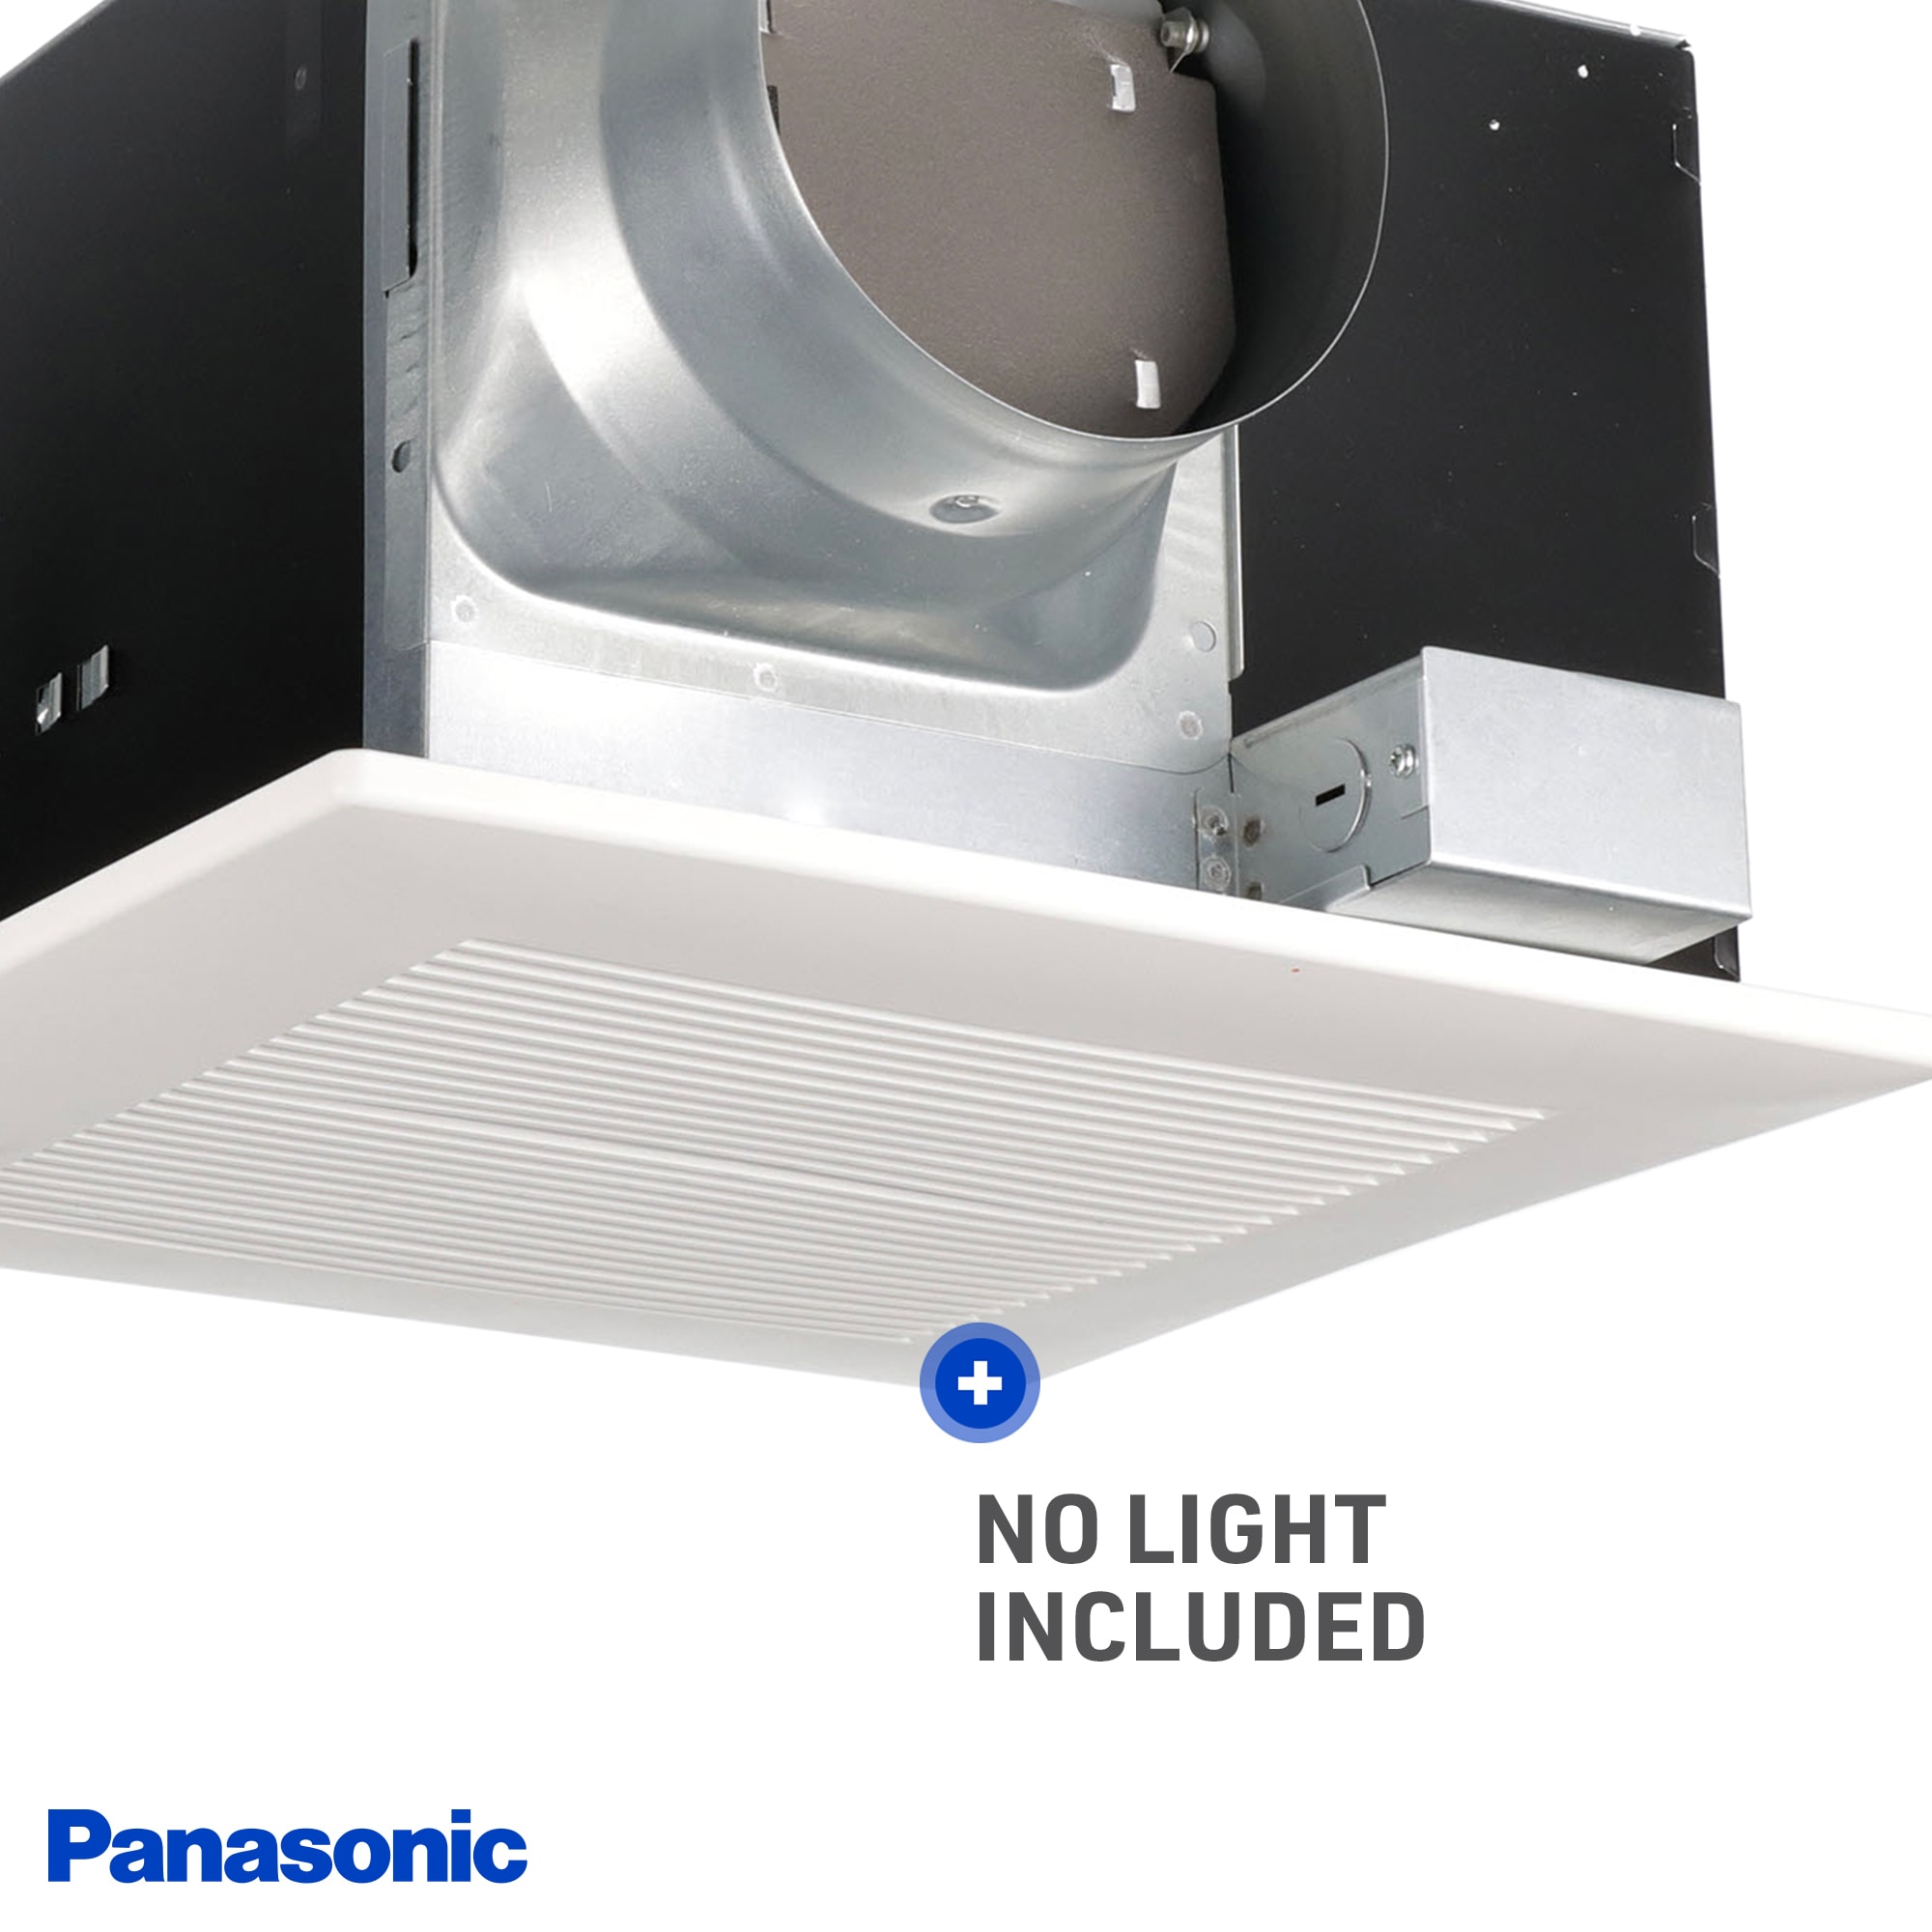 Panasonic WhisperCeiling 2-Sone 290-CFM White Bathroom Fan ENERGY STAR